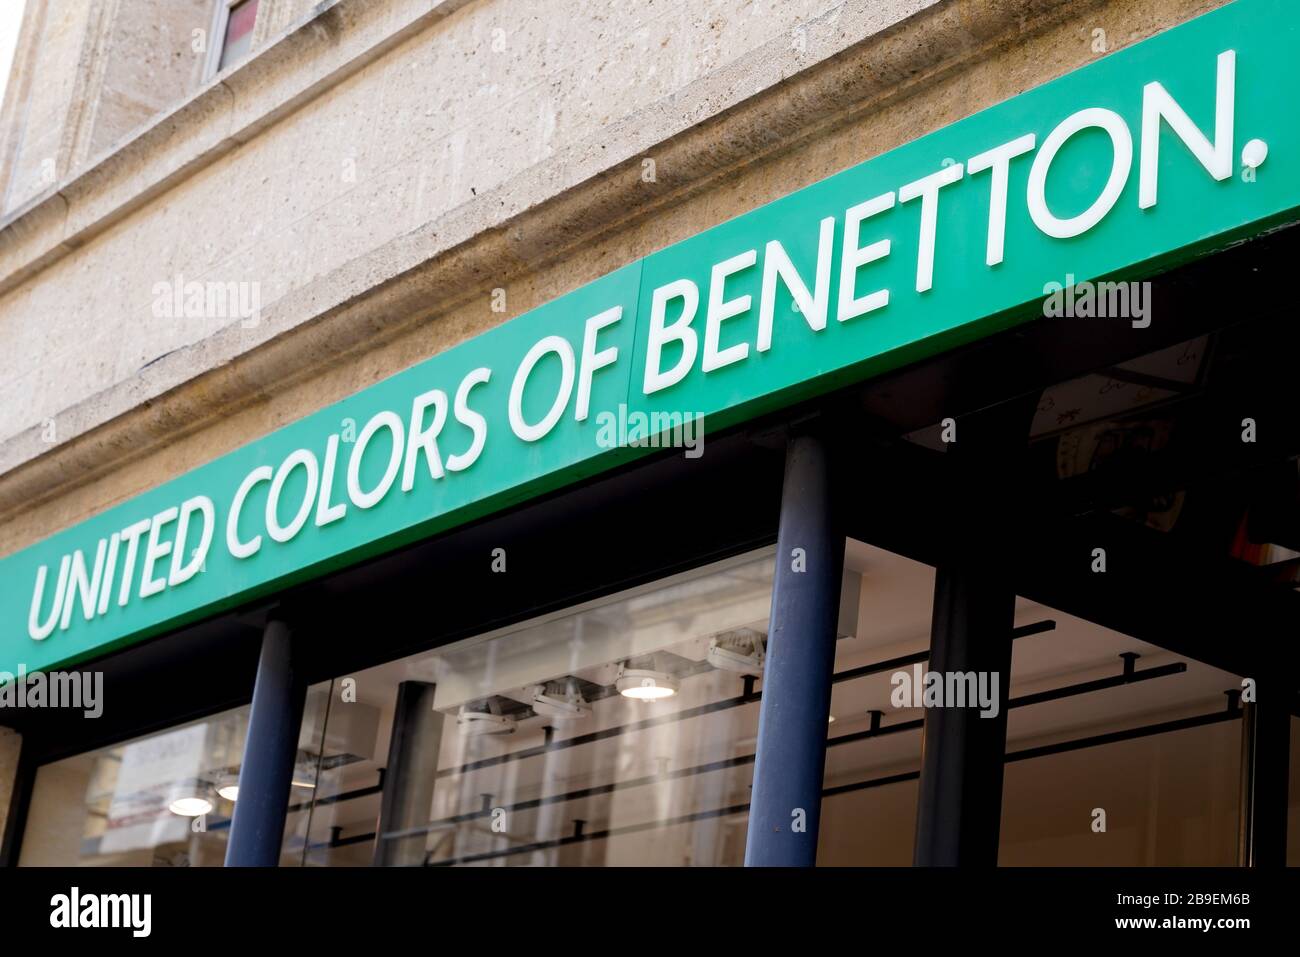 Benetton Clothes Shop Fotos e Imágenes de stock - Alamy